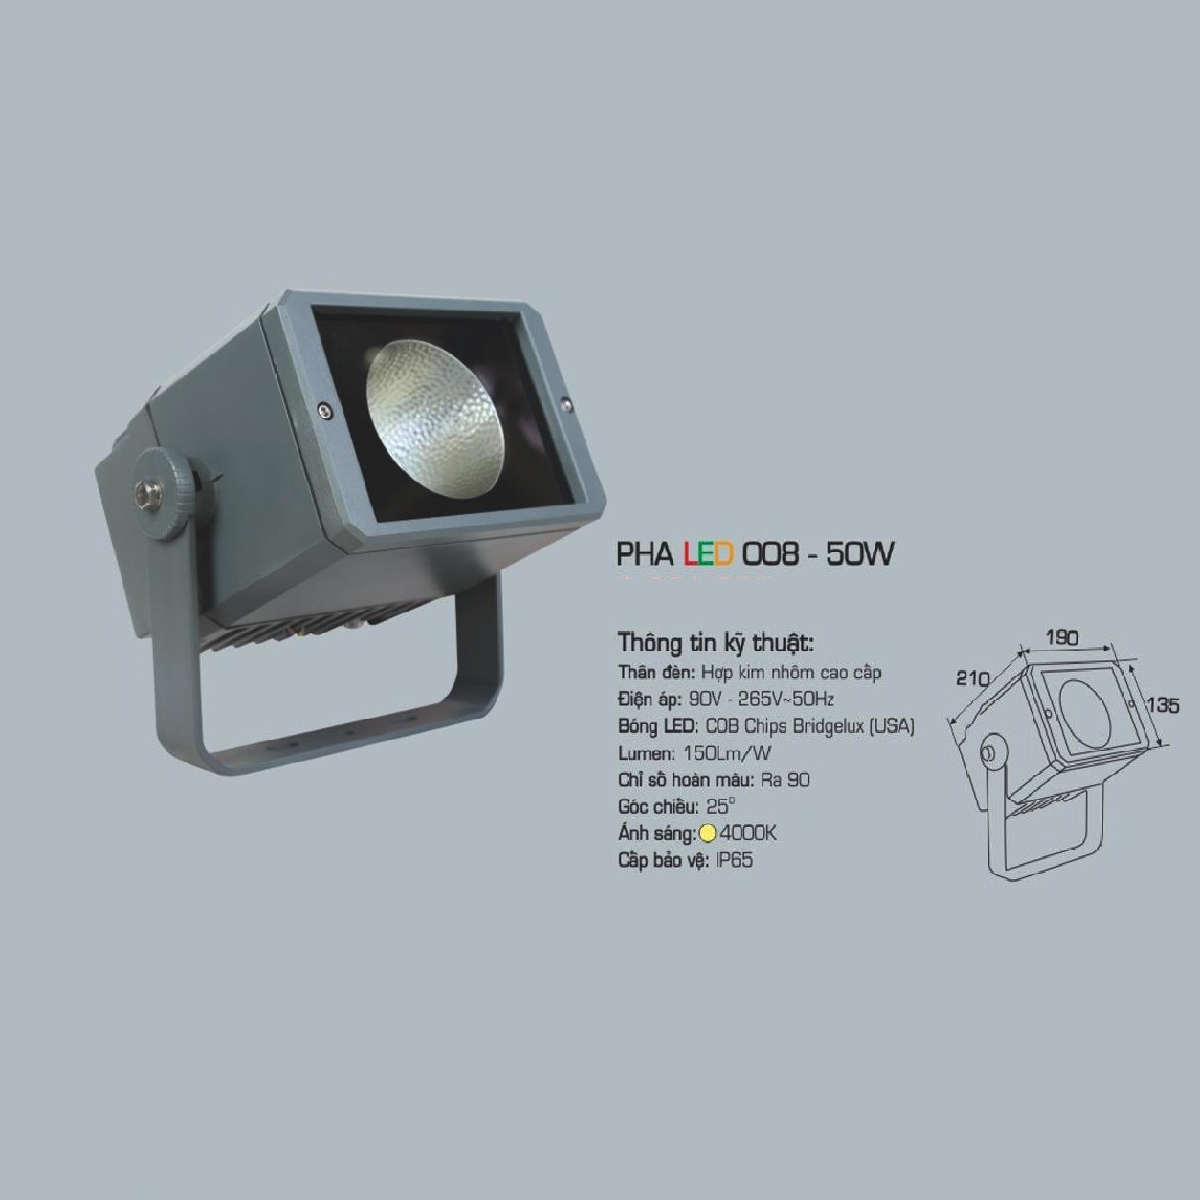 AFC - 008-50W: Đèn pha LED 50W - Ánh sáng trung tính 4000K